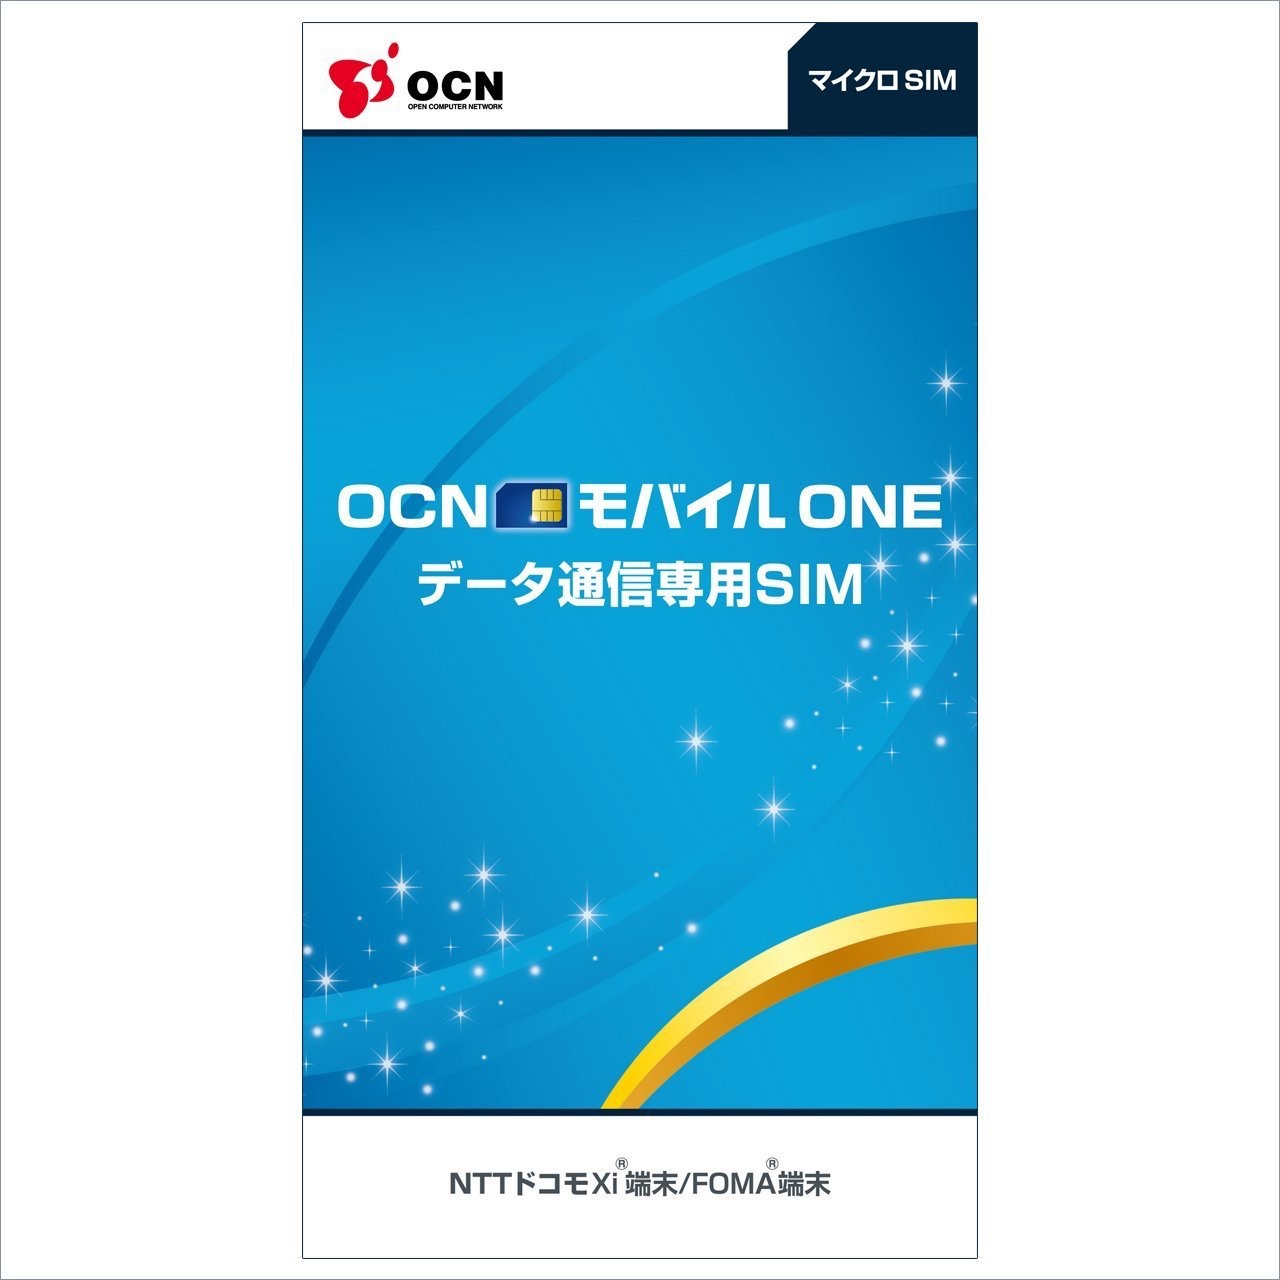 ｢OCN モバイル ONE｣、12月1日より10GB/月コースの提供を開始へ